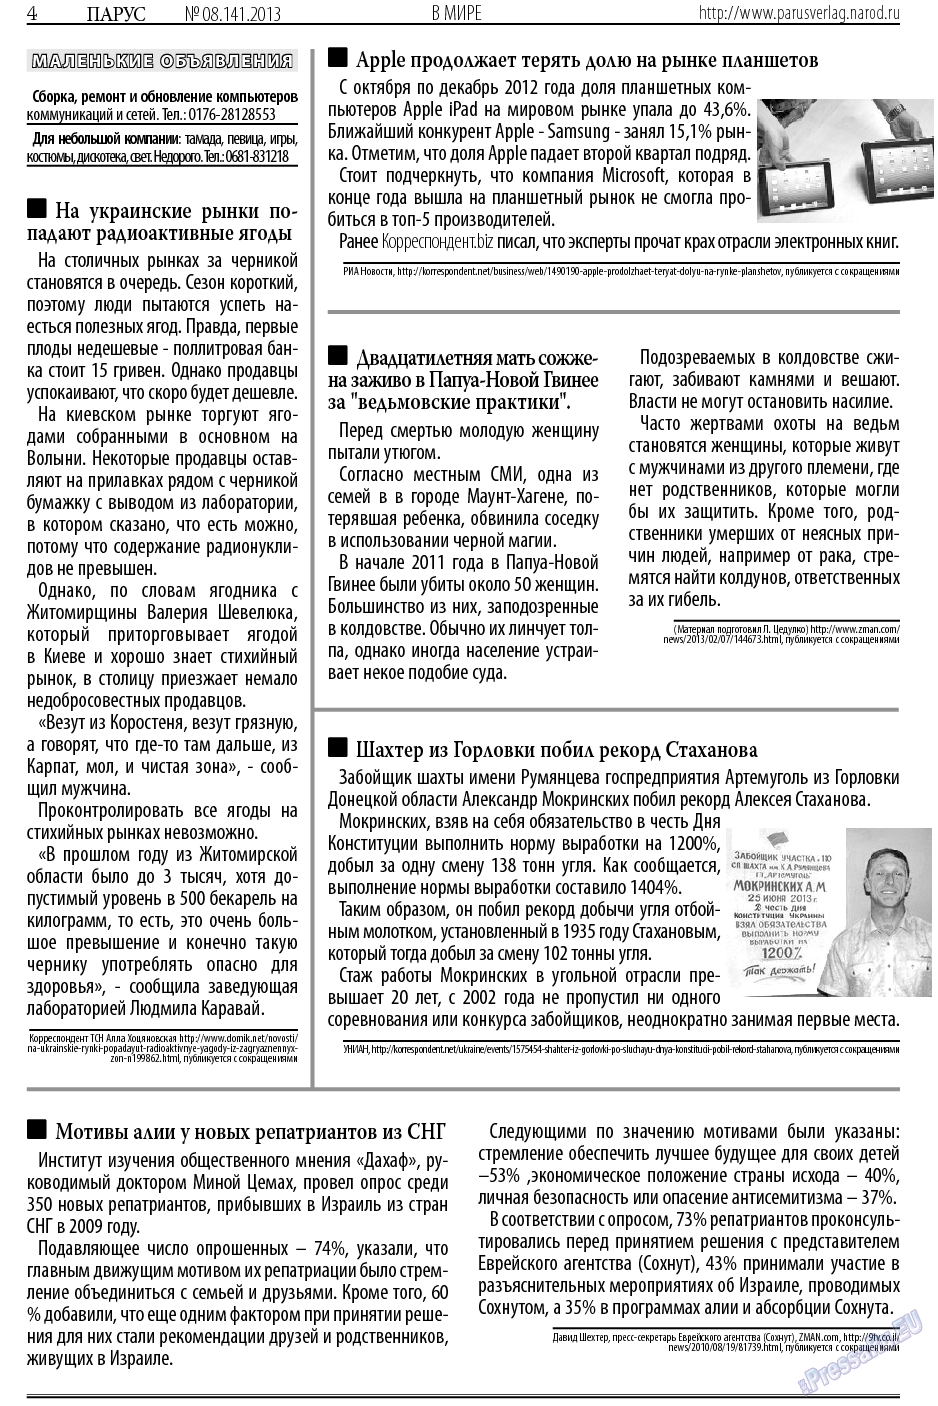 Парус (газета). 2013 год, номер 8, стр. 4